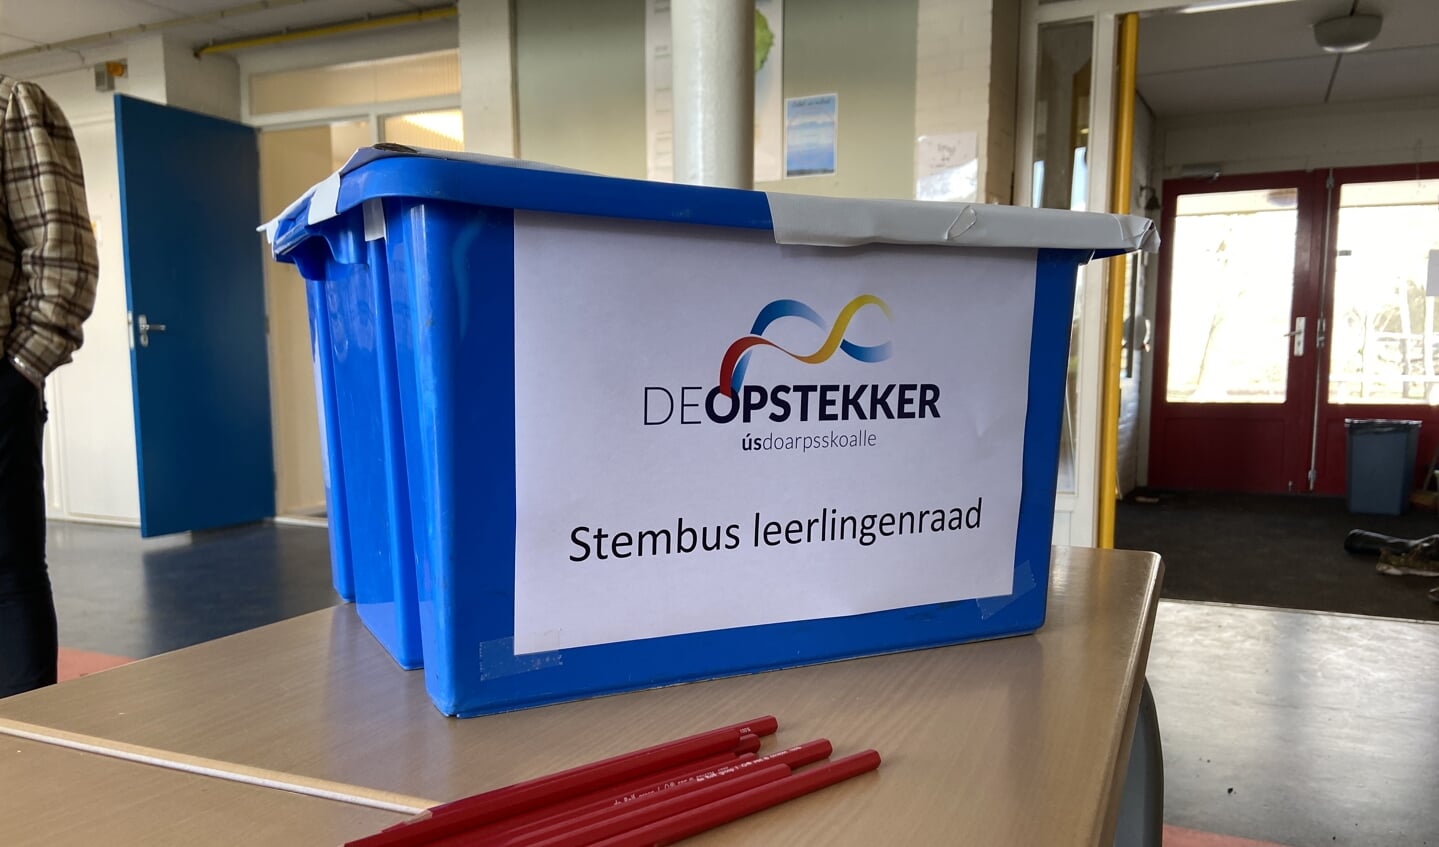 Stembus leerlingenraad De Opstekker. 